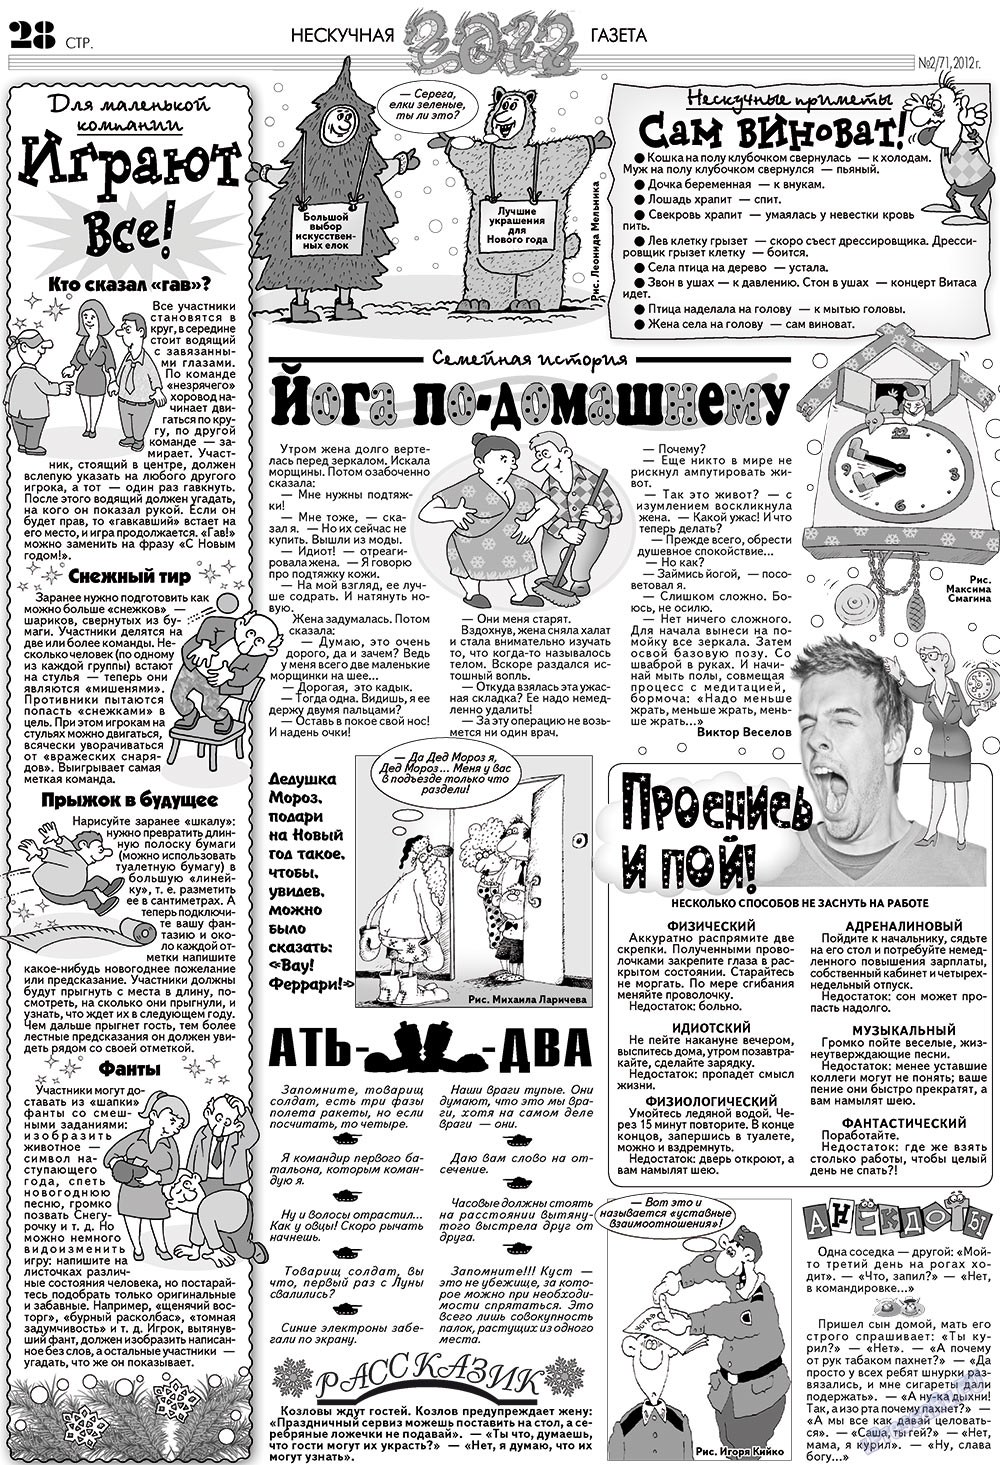 Нескучная газета (журнал). 2012 год, номер 2, стр. 24